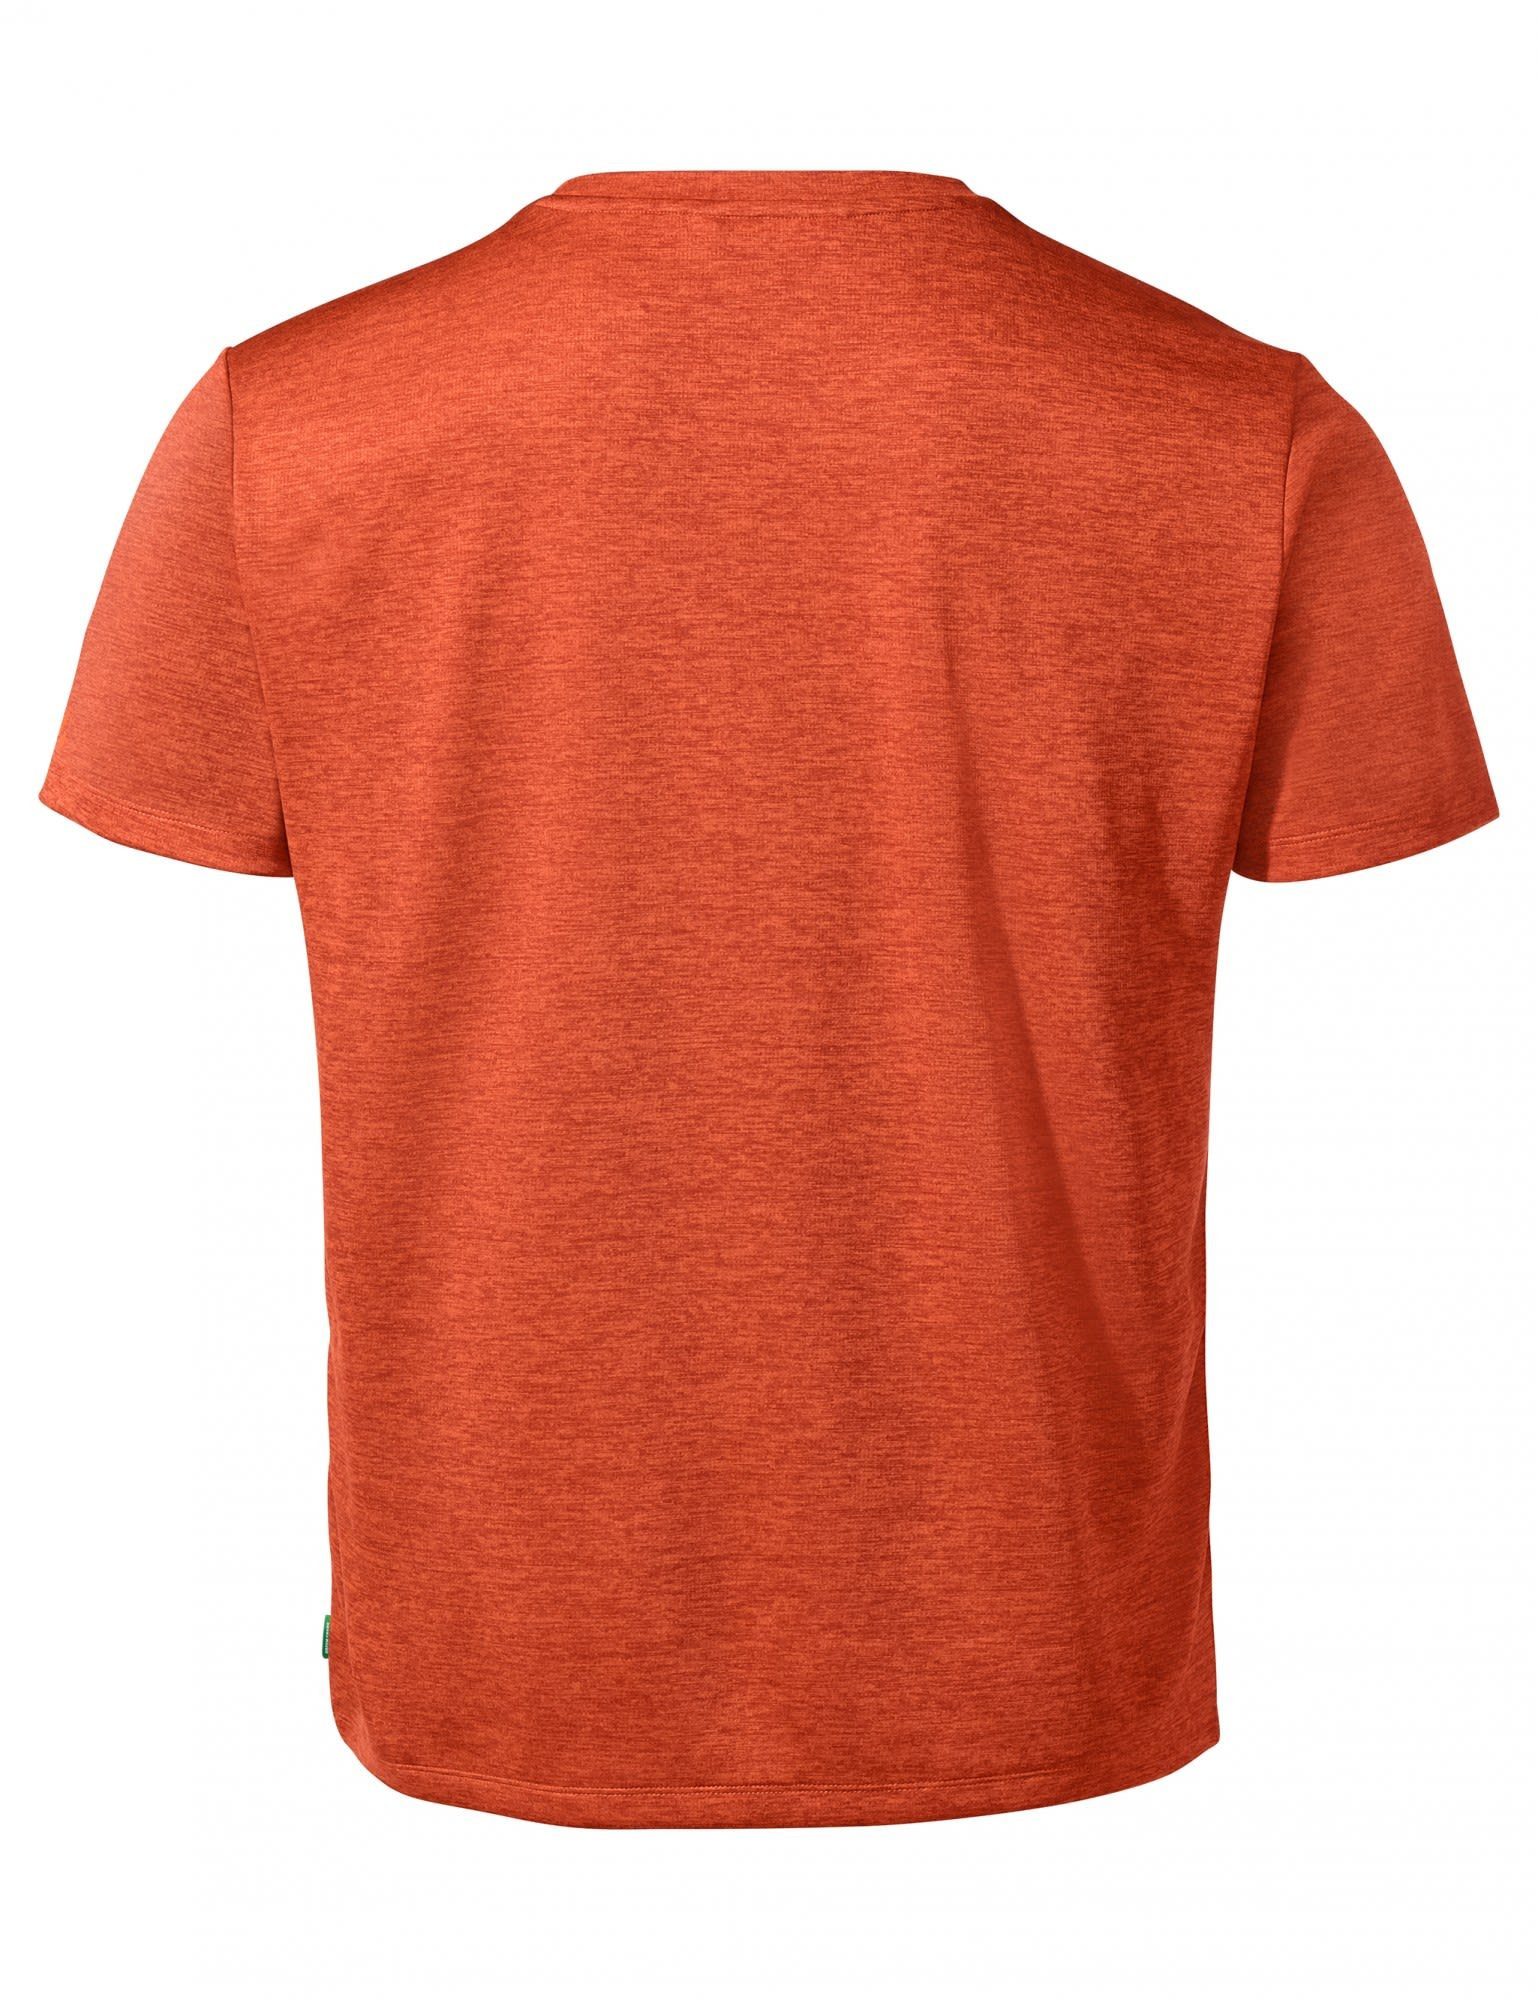 T-Shirt Vaude Mens T-shirt Herren Essential VAUDE Red Glowing Kurzarm-Shirt